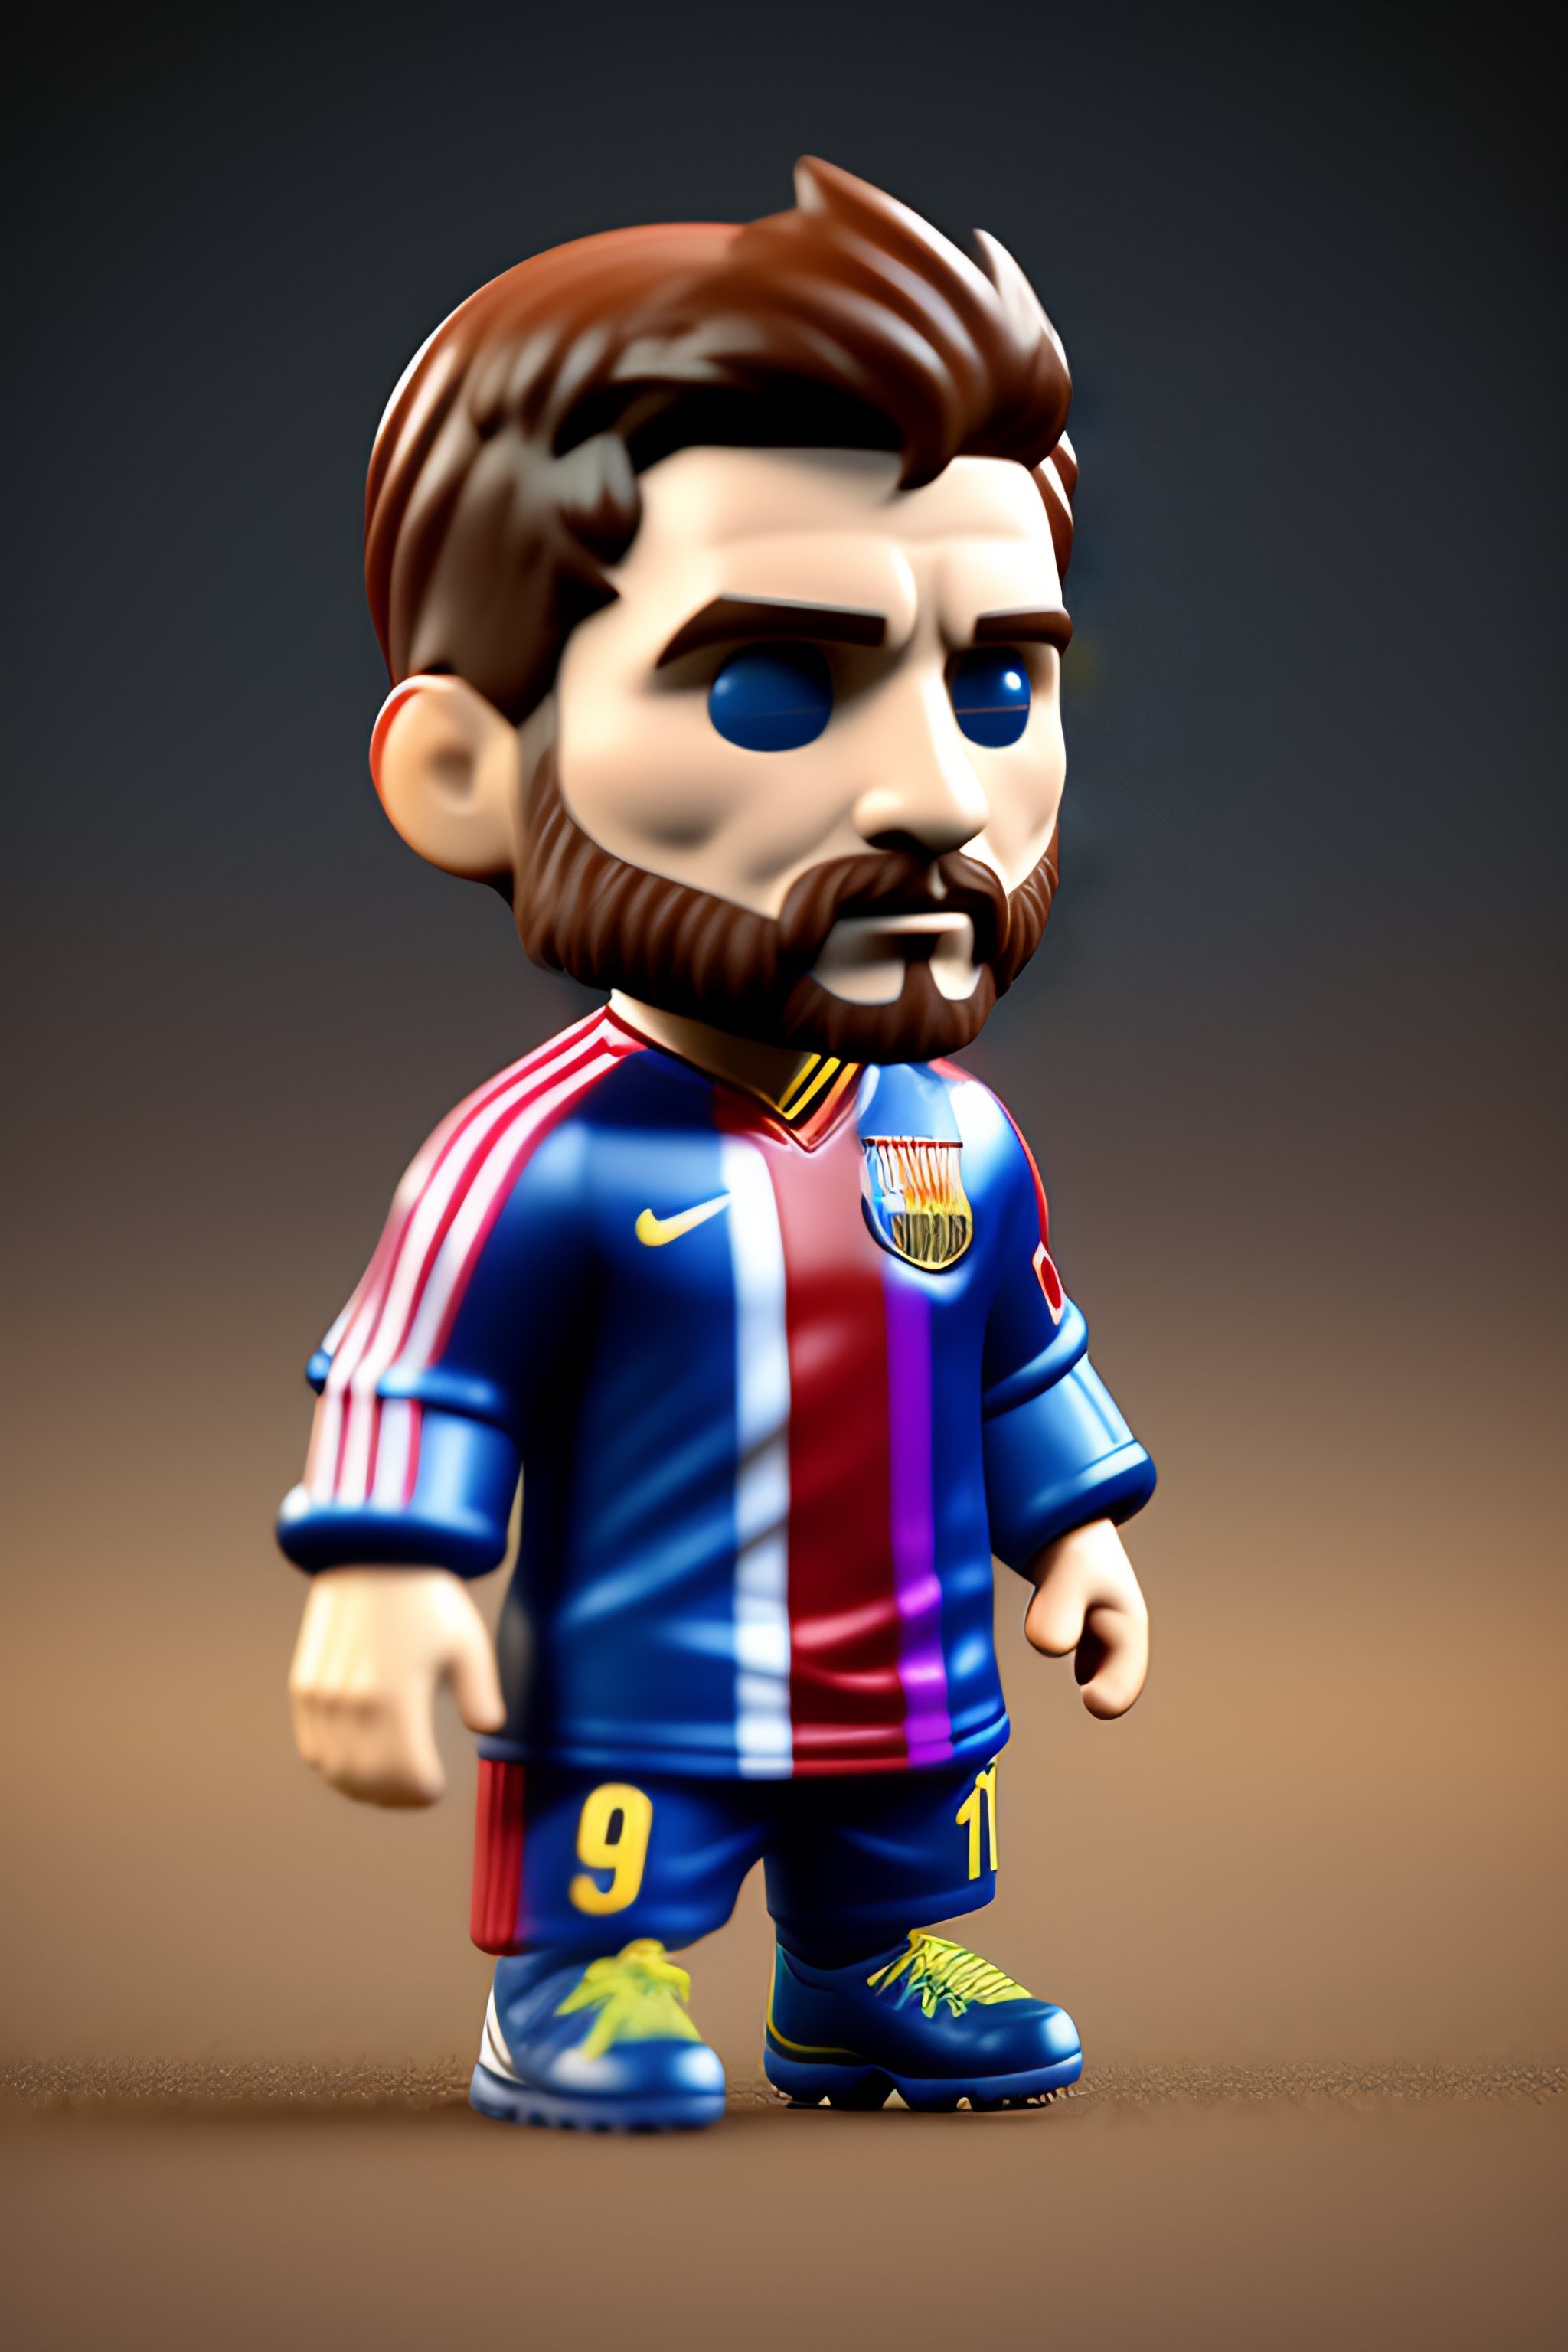 Funko Pop Lionel Messi: Với các fan hâm mộ bóng đá và đặc biệt là những người yêu thích Lionel Messi, Funko Pop Lionel Messi đang là một món đồ chơi được săn đón hàng đầu hiện nay. Với kiểu dáng chibi đáng yêu và được làm từ chất liệu chất lượng cao, sản phẩm này sẽ làm hài lòng bất kỳ ai.